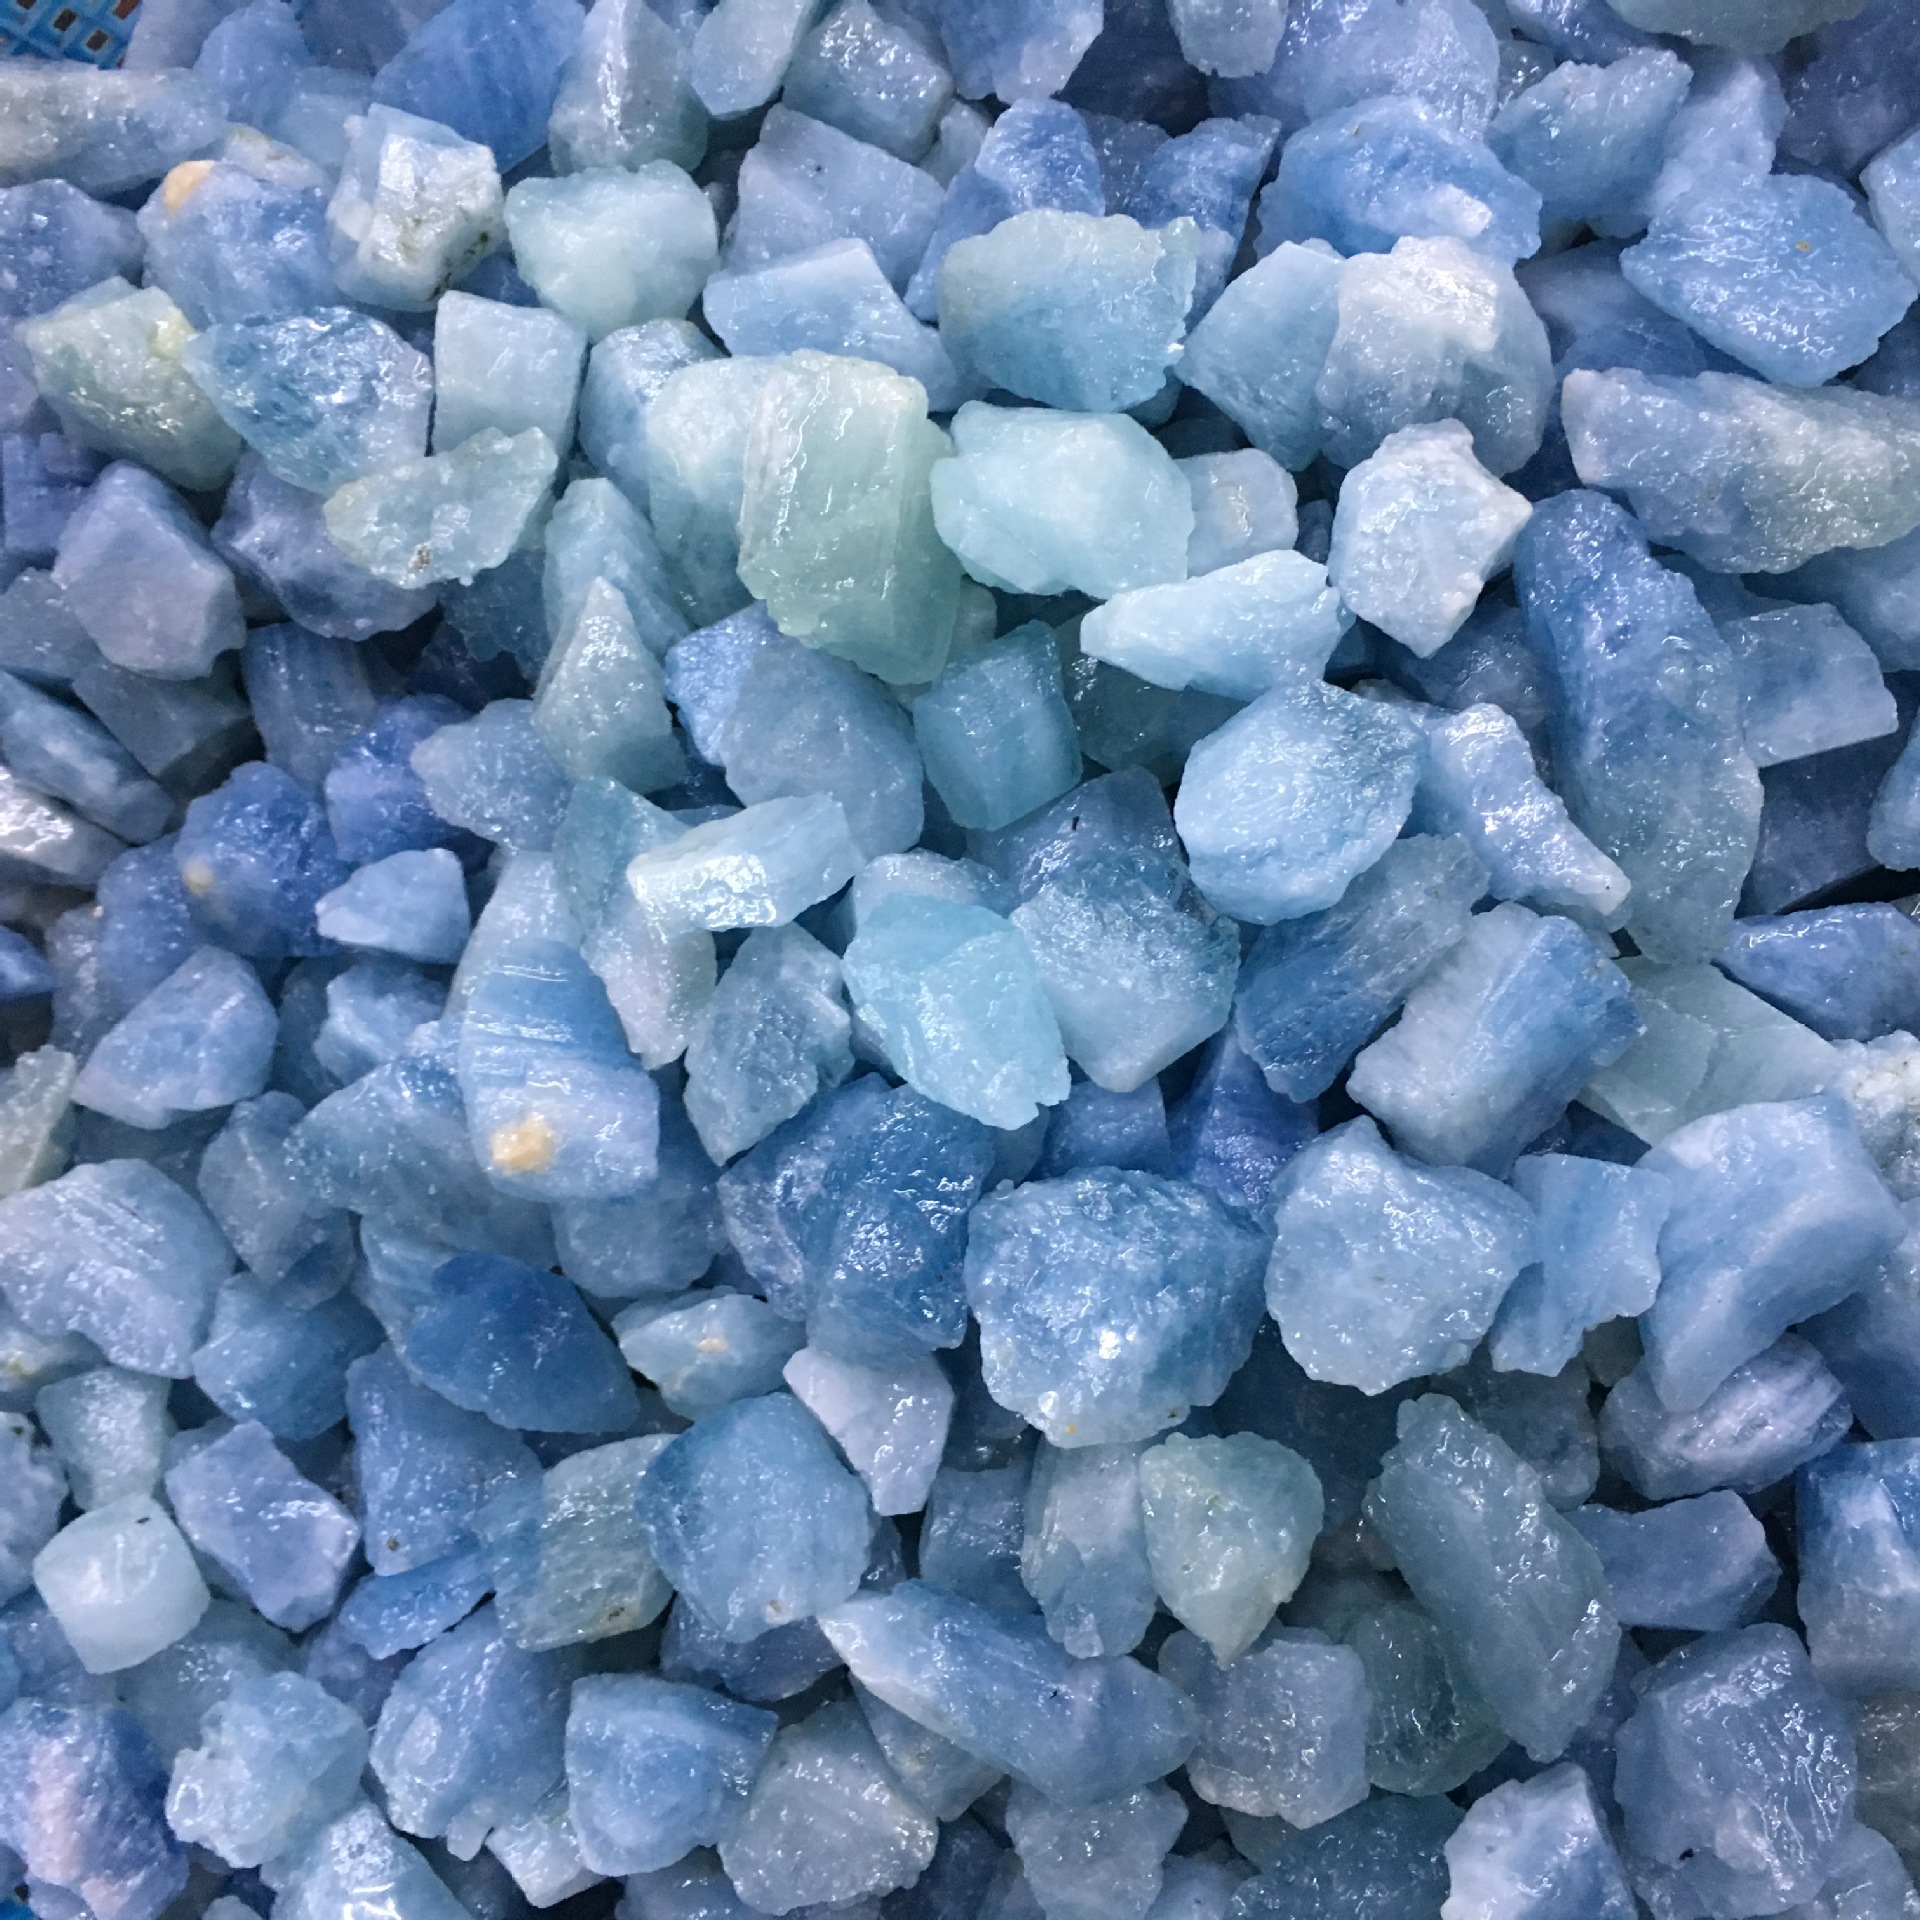 天然海蓝宝石水晶原石半成品裸石冰蓝晶体品质原石挂件厂家批发